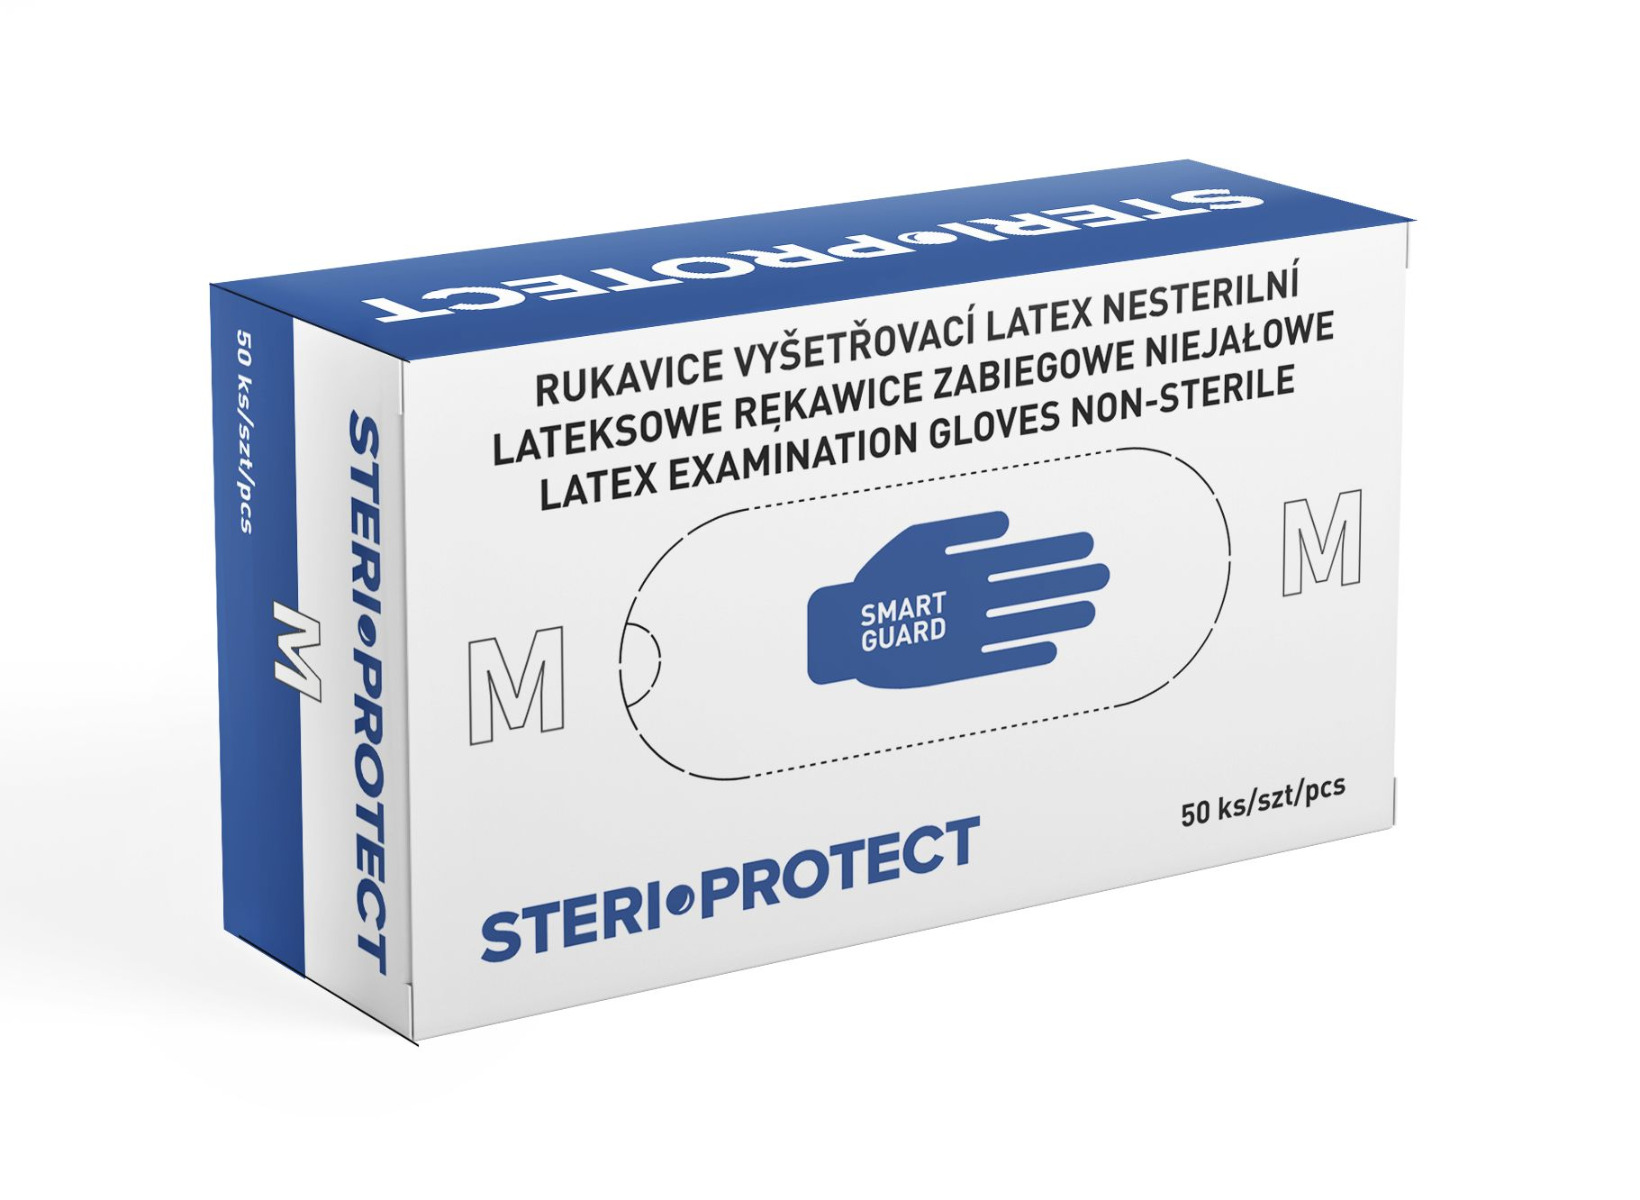 Steriwund Rukavice vyšetřovací latex nesterilní vel. M 50 ks Steriwund